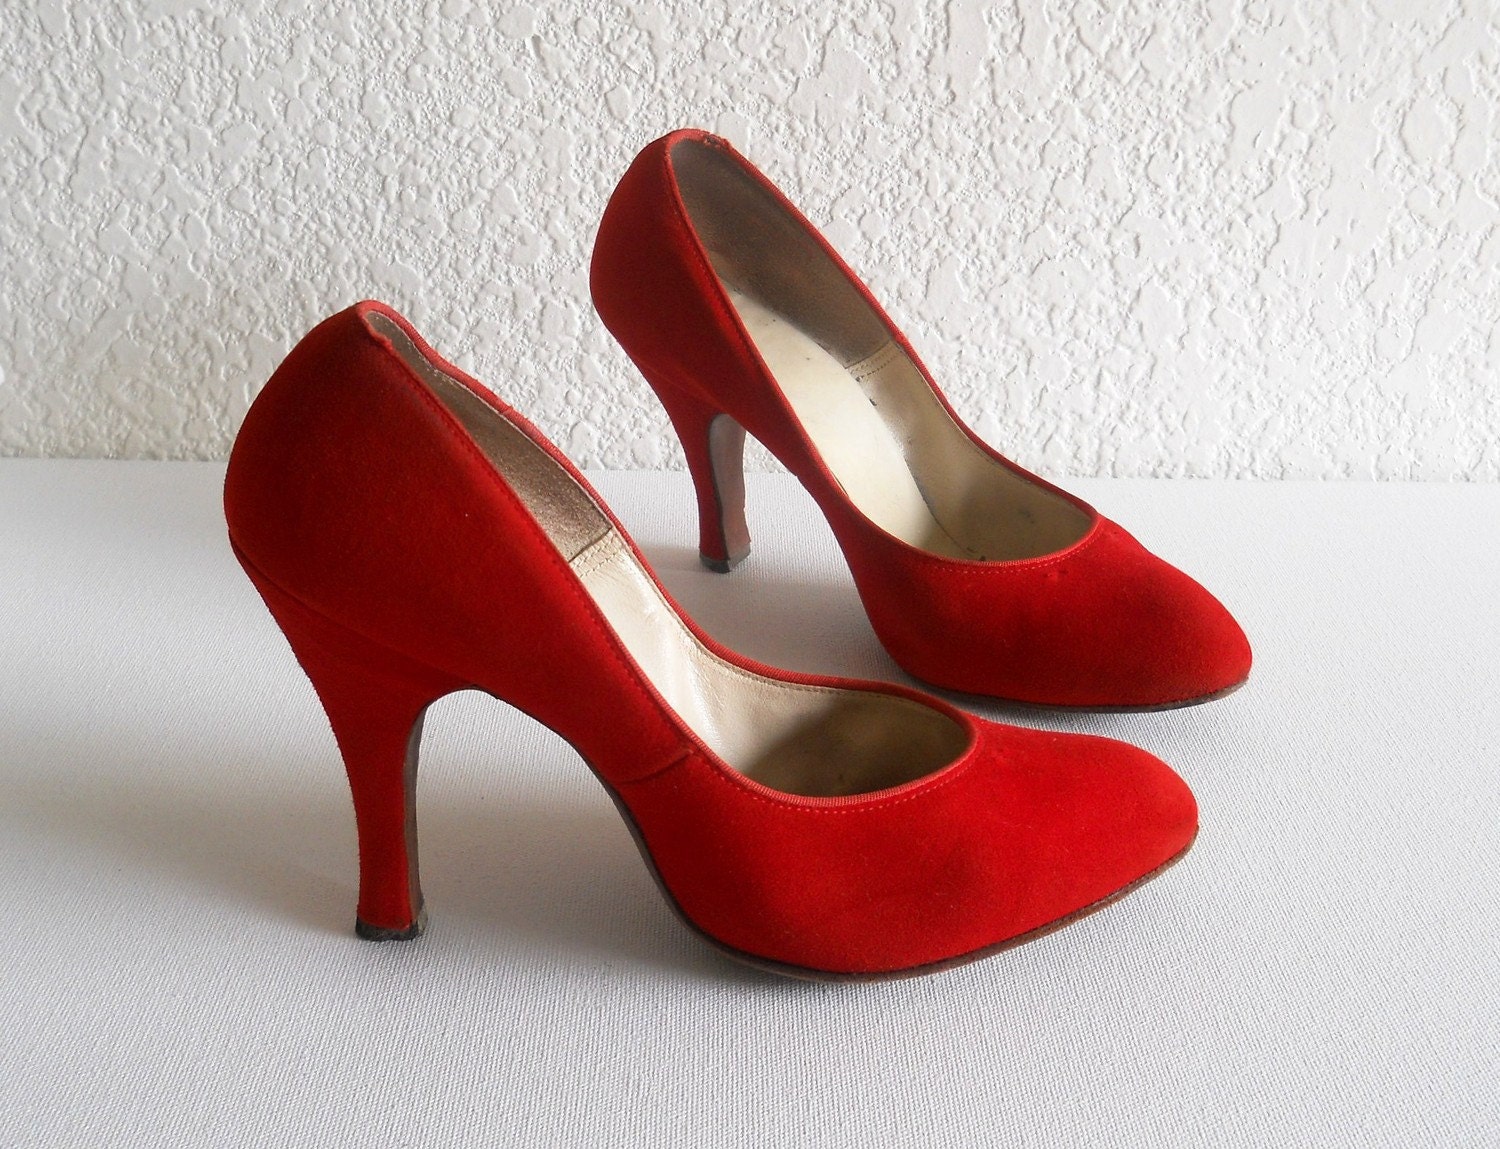 Vintage Heels, QualiCraft Stilettos, Red Suede - Size 5.5